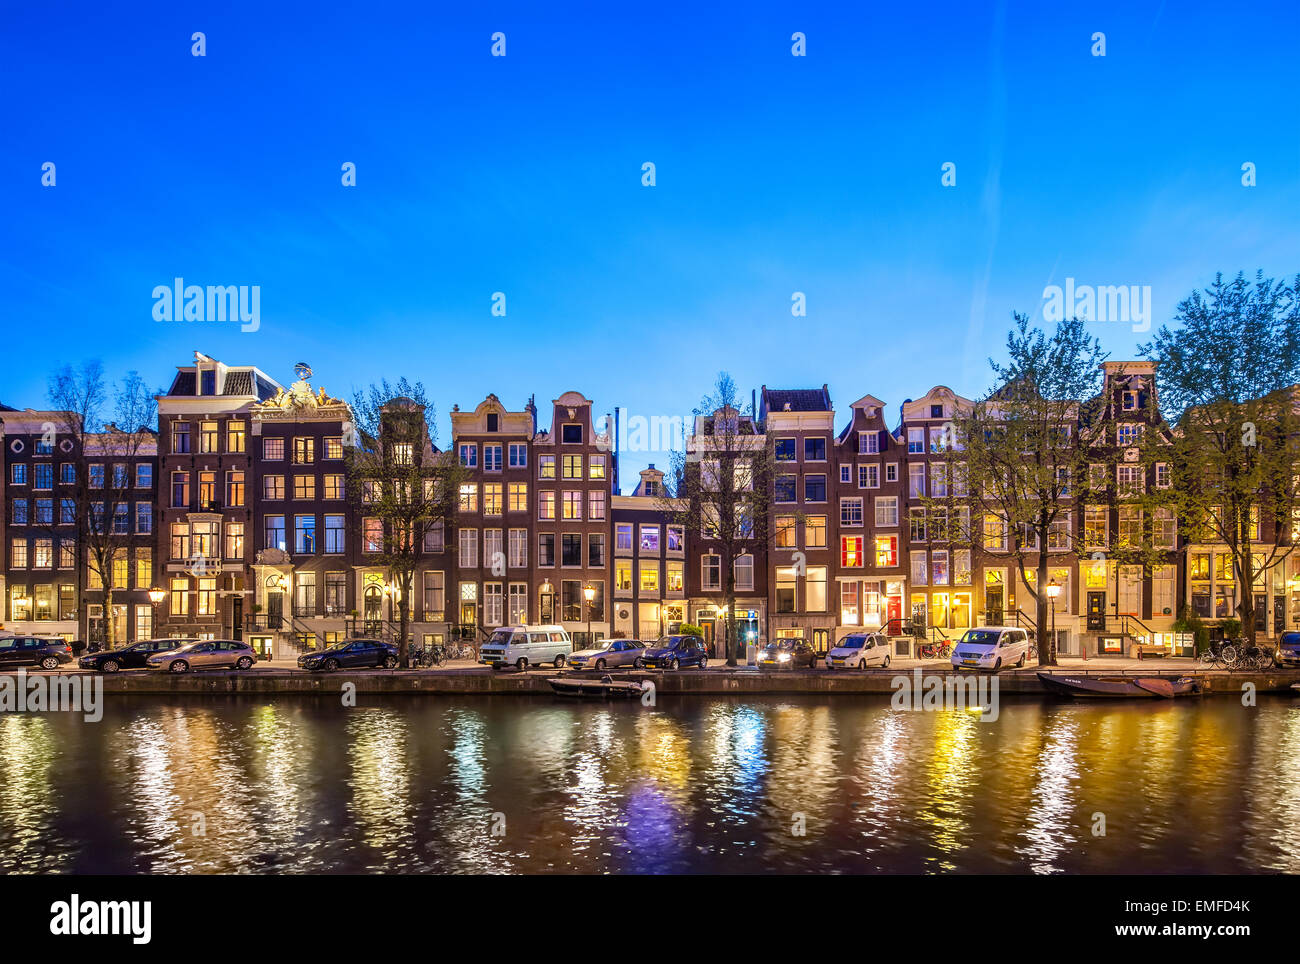 Les maisons historiques Amsterdam Singel 396 - 366 la nuit. Maisons du canal d'Amsterdam, vue panoramique romantique au coucher du soleil. Banque D'Images